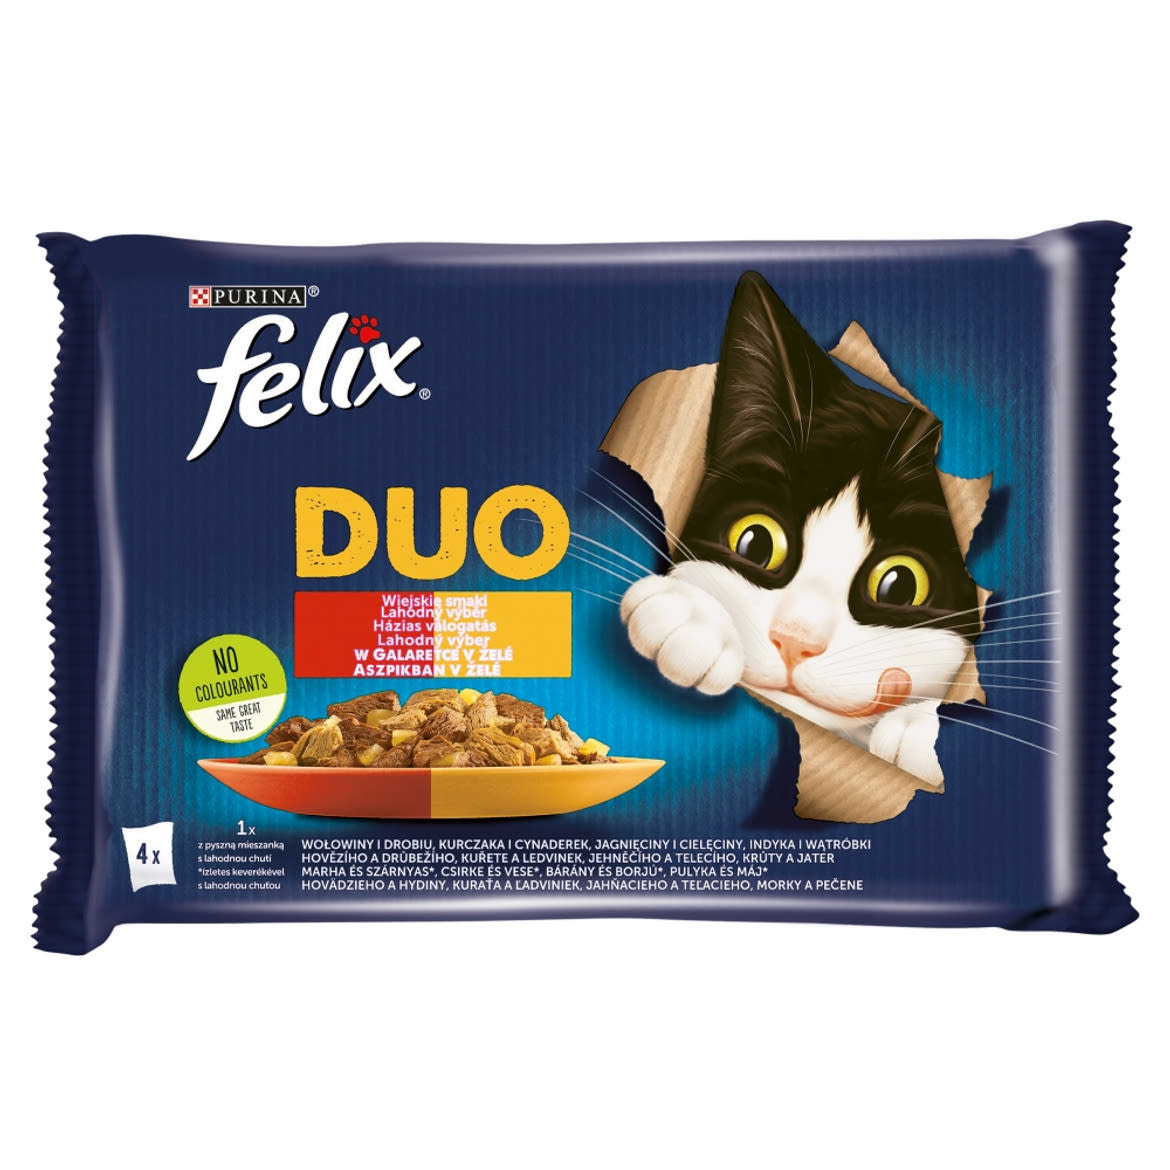 Felix Sensations Duo Házias Válogatás aszpikban nedves macskaeledel 4 x 85 g